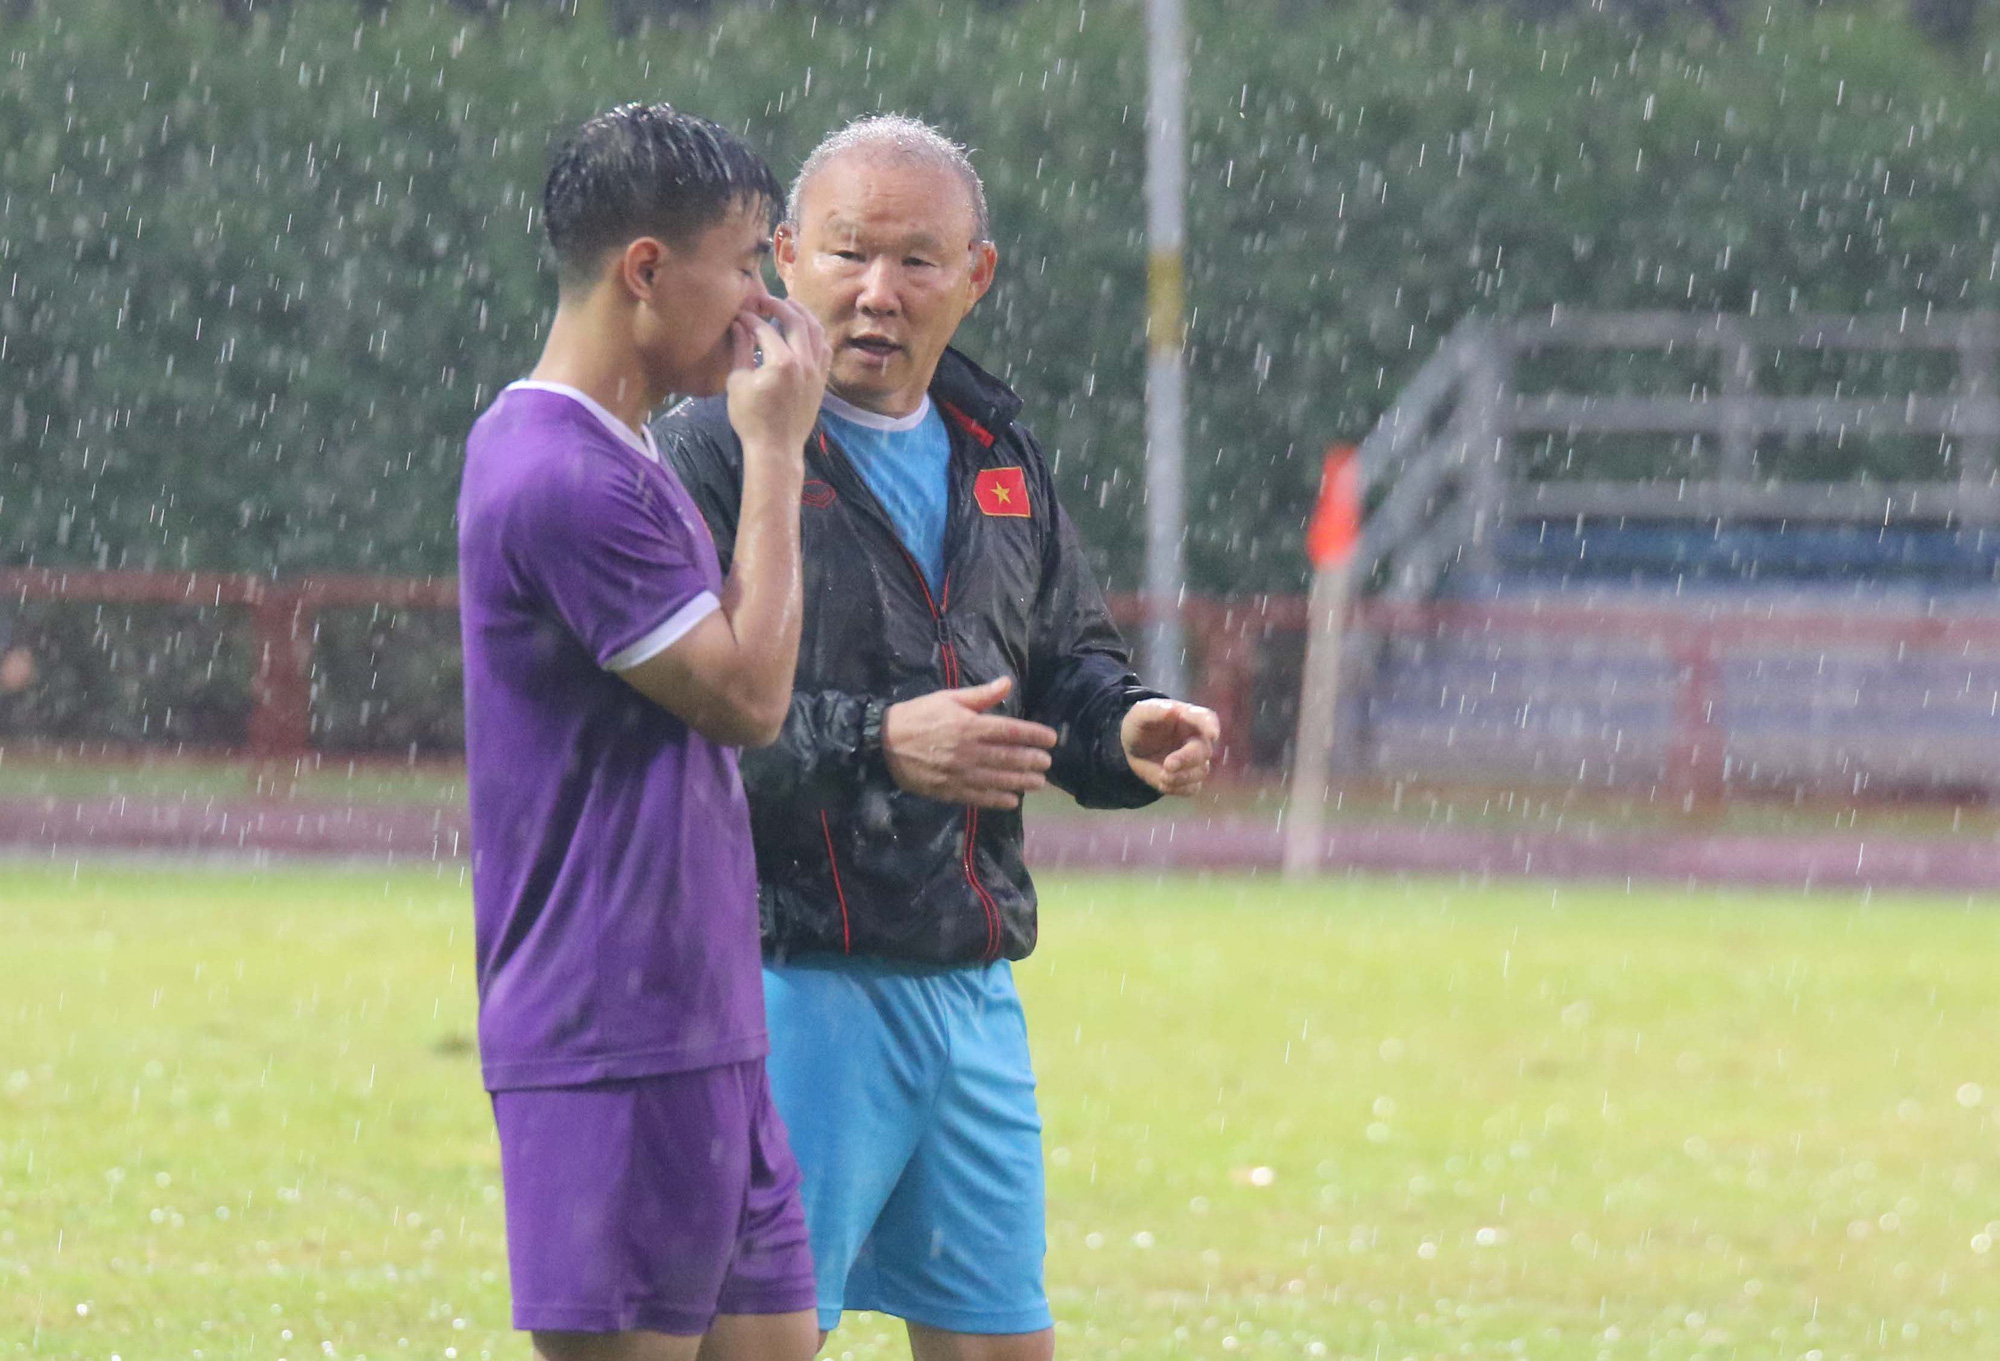 HLV Park Hang-seo không đồng ý Malaysia đòi bổ sung cầu thủ - Ảnh 2.